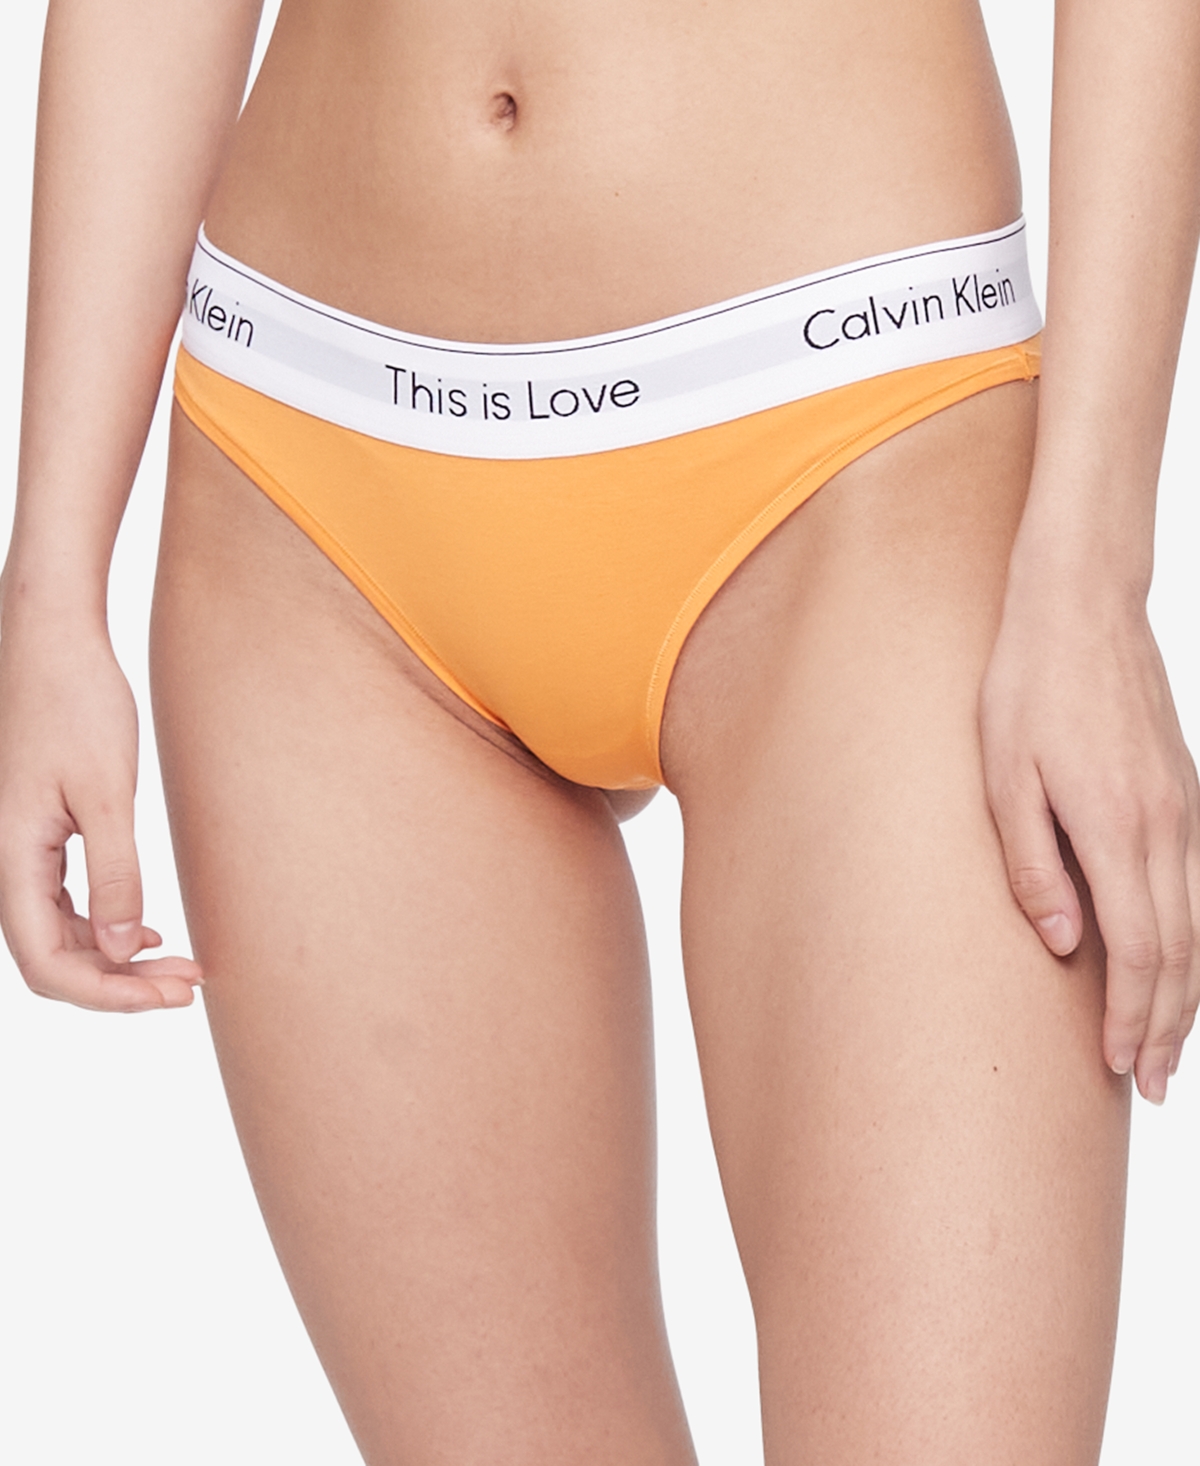 Calvin Klein Women's Ideal Stretch Micro String Thong Underwear